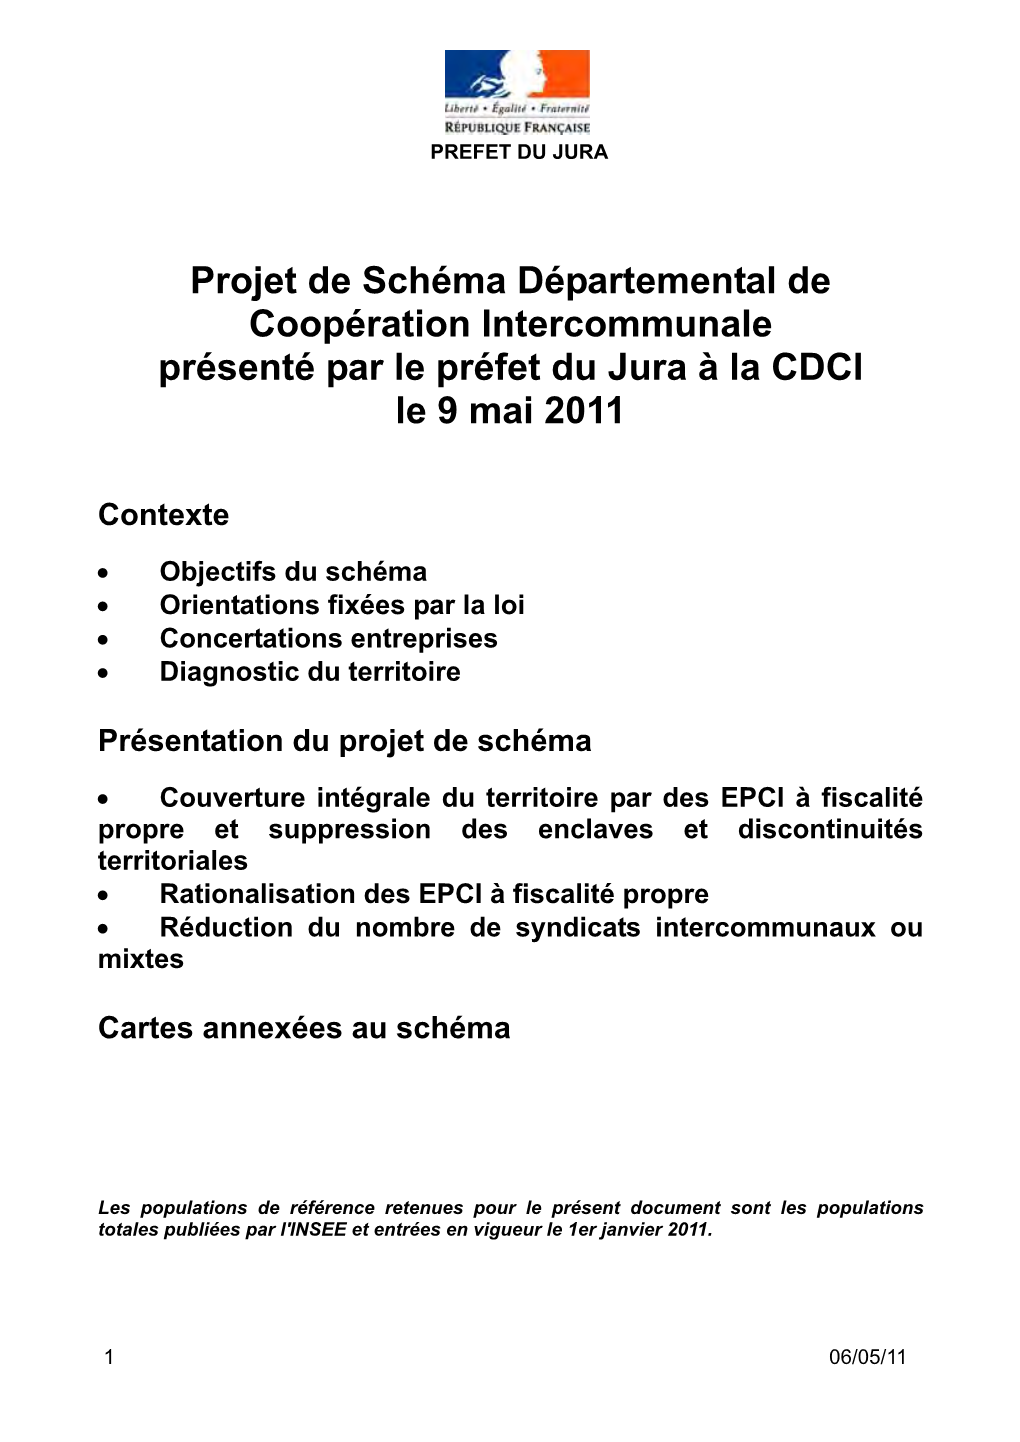 Projet De Schéma Départemental De Coopération Intercommunale Présenté Par Le Préfet Du Jura À La CDCI Le 9 Mai 2011